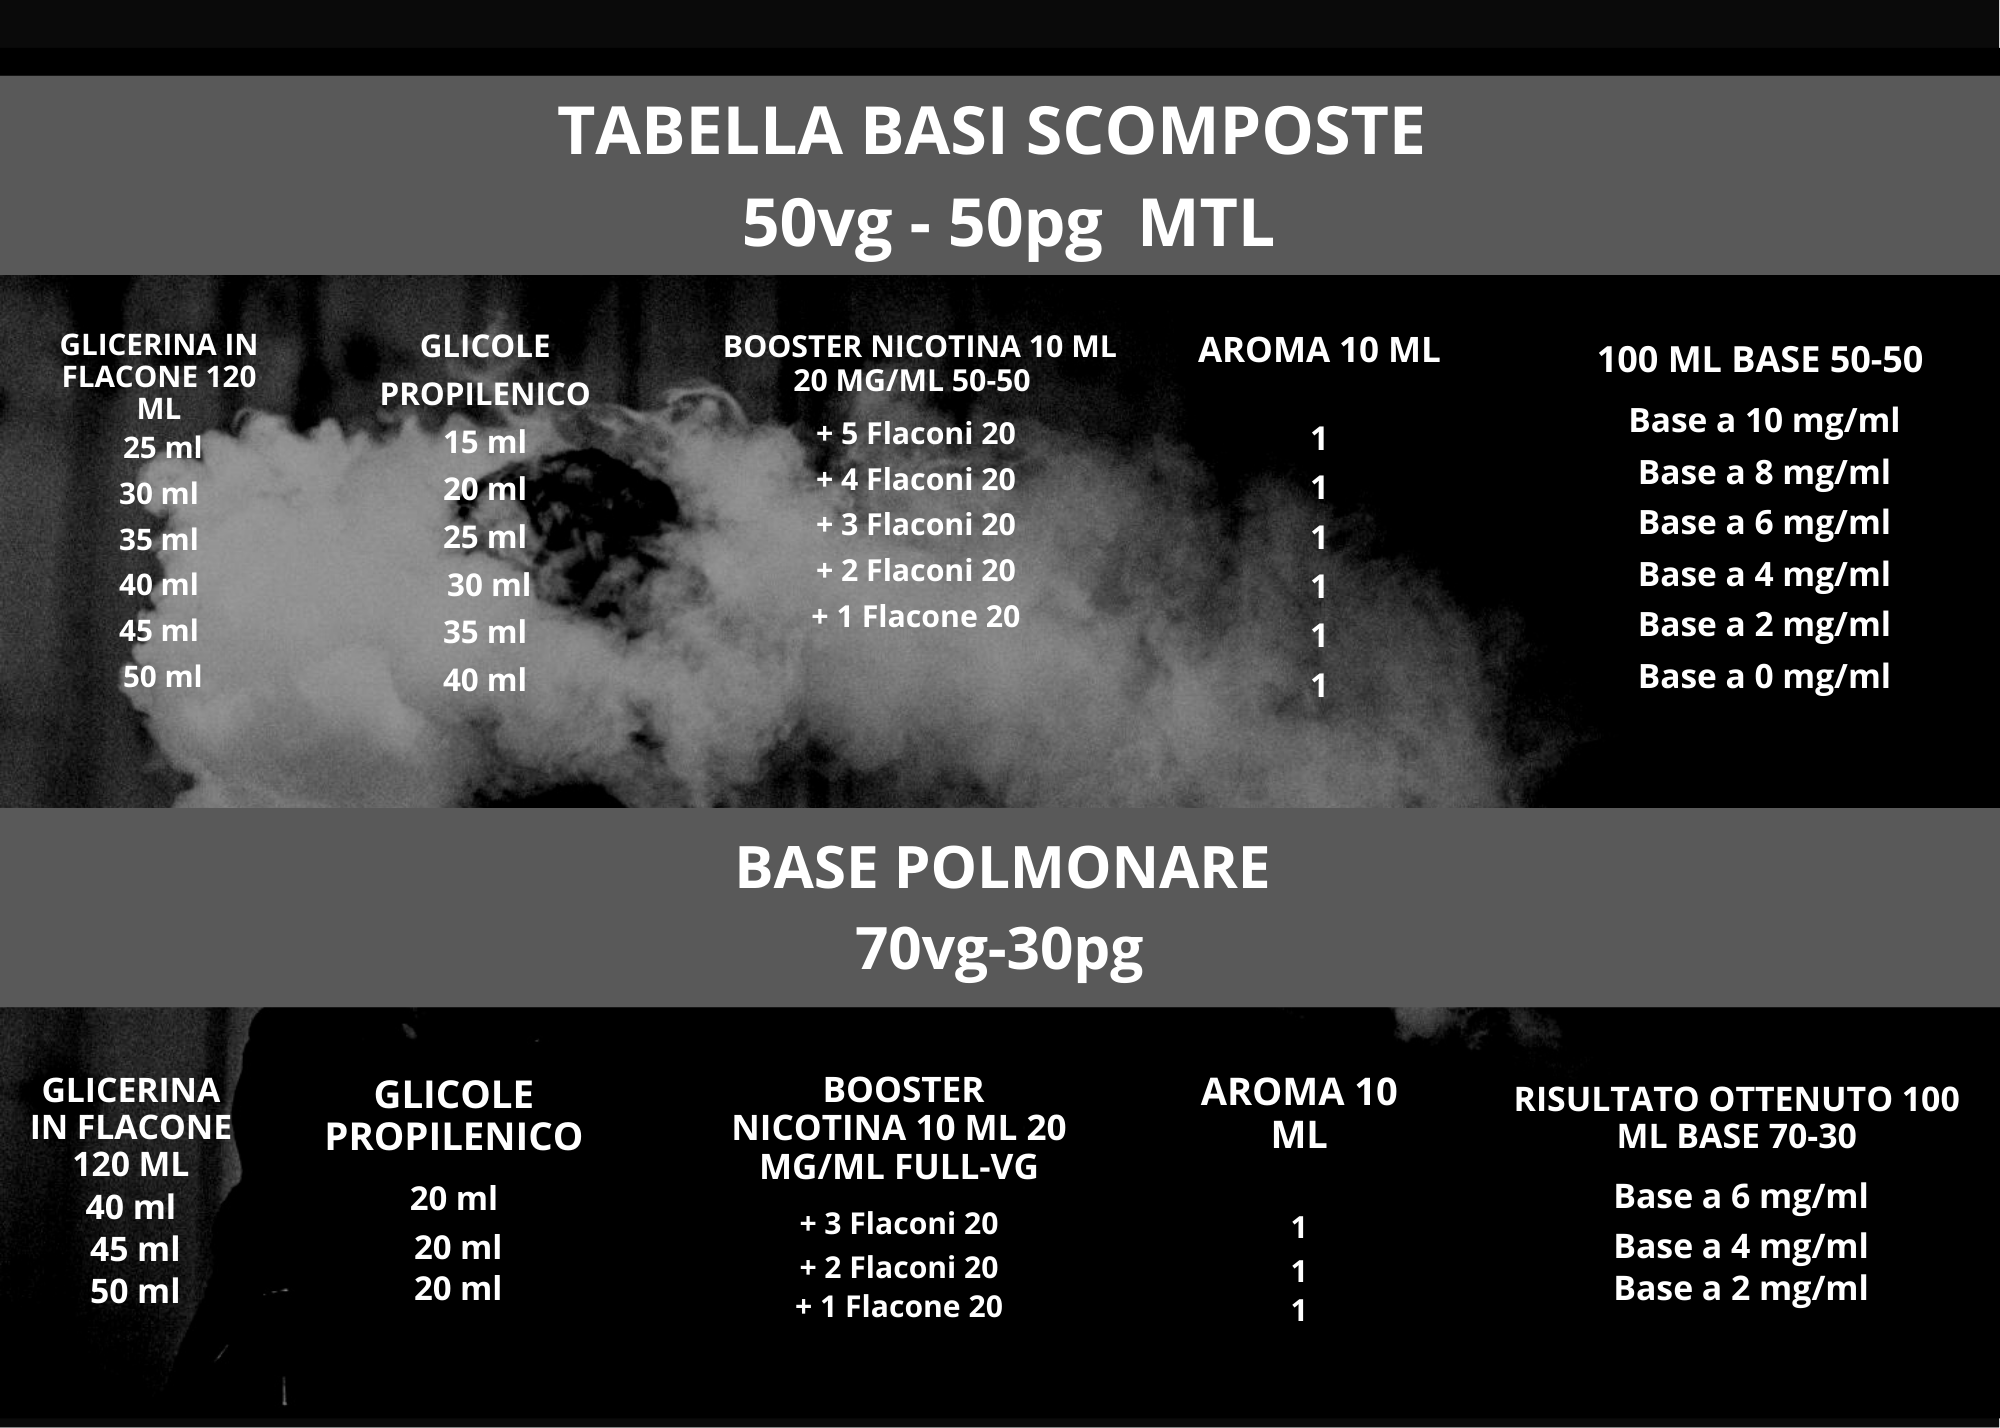 Tabella%20Comp-%20Basi%20Scomposte%20-%20Glicole%20e%20Glicerina-pdf%20(2).png